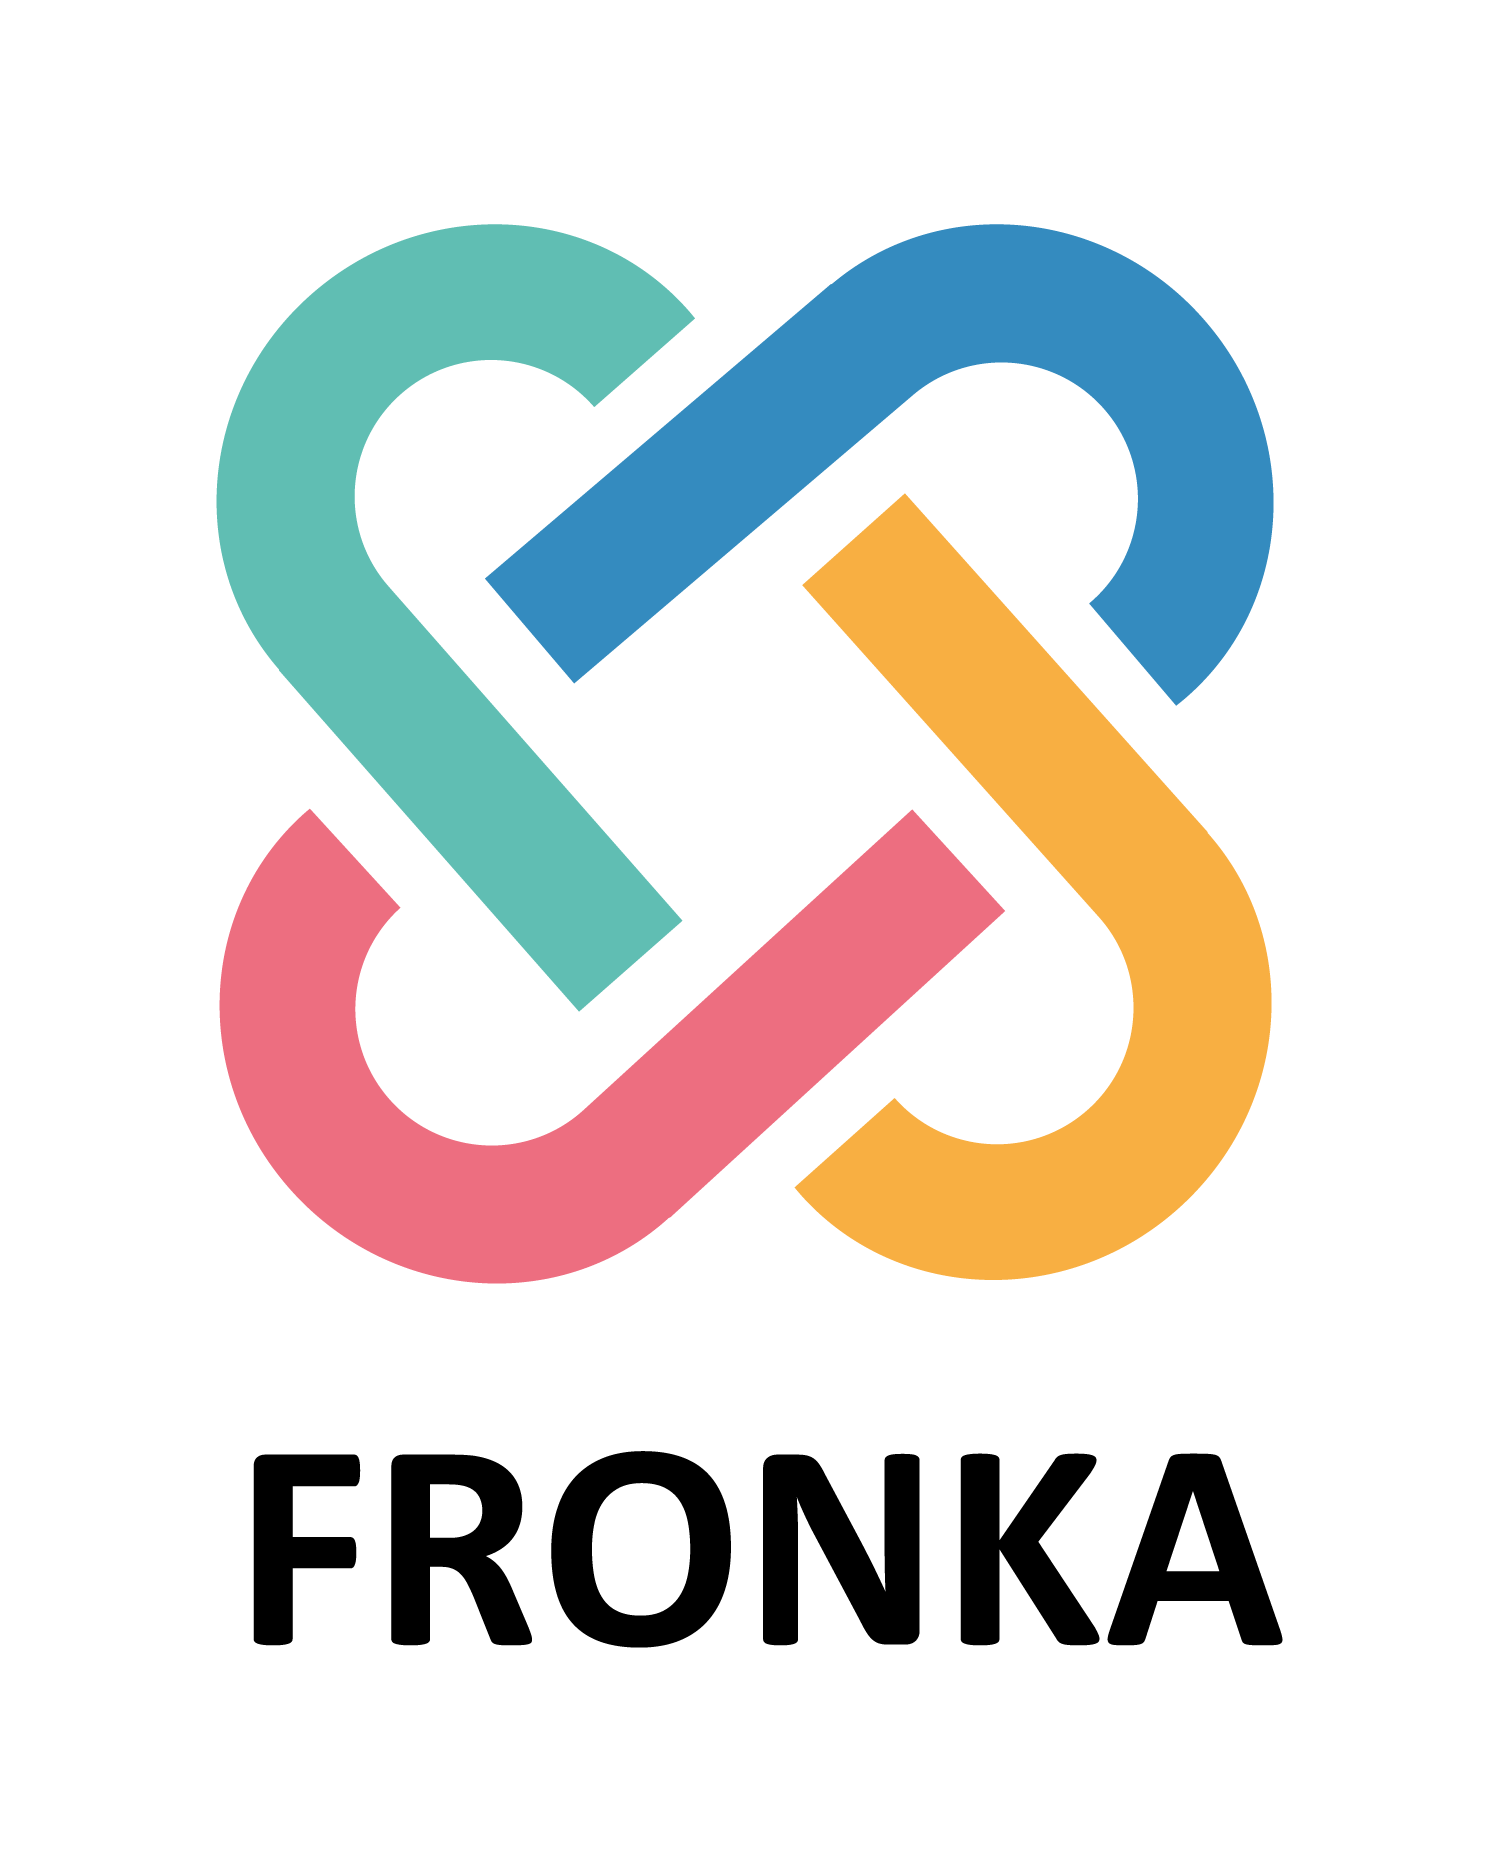 Fronka-logo white background